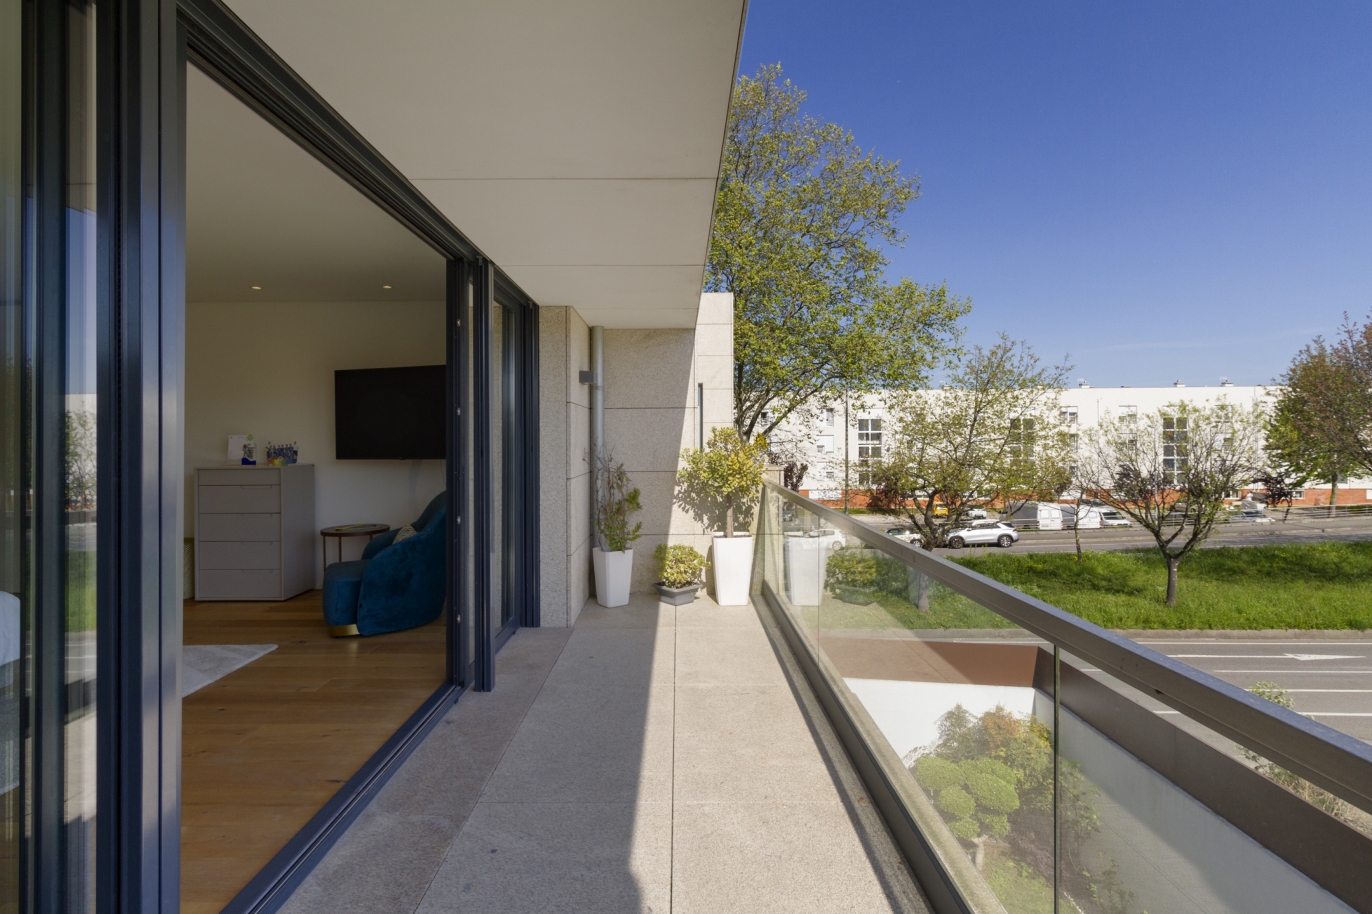 4 bedroom villa with garden, for sale, near CLIP, Porto, Portugal_224840